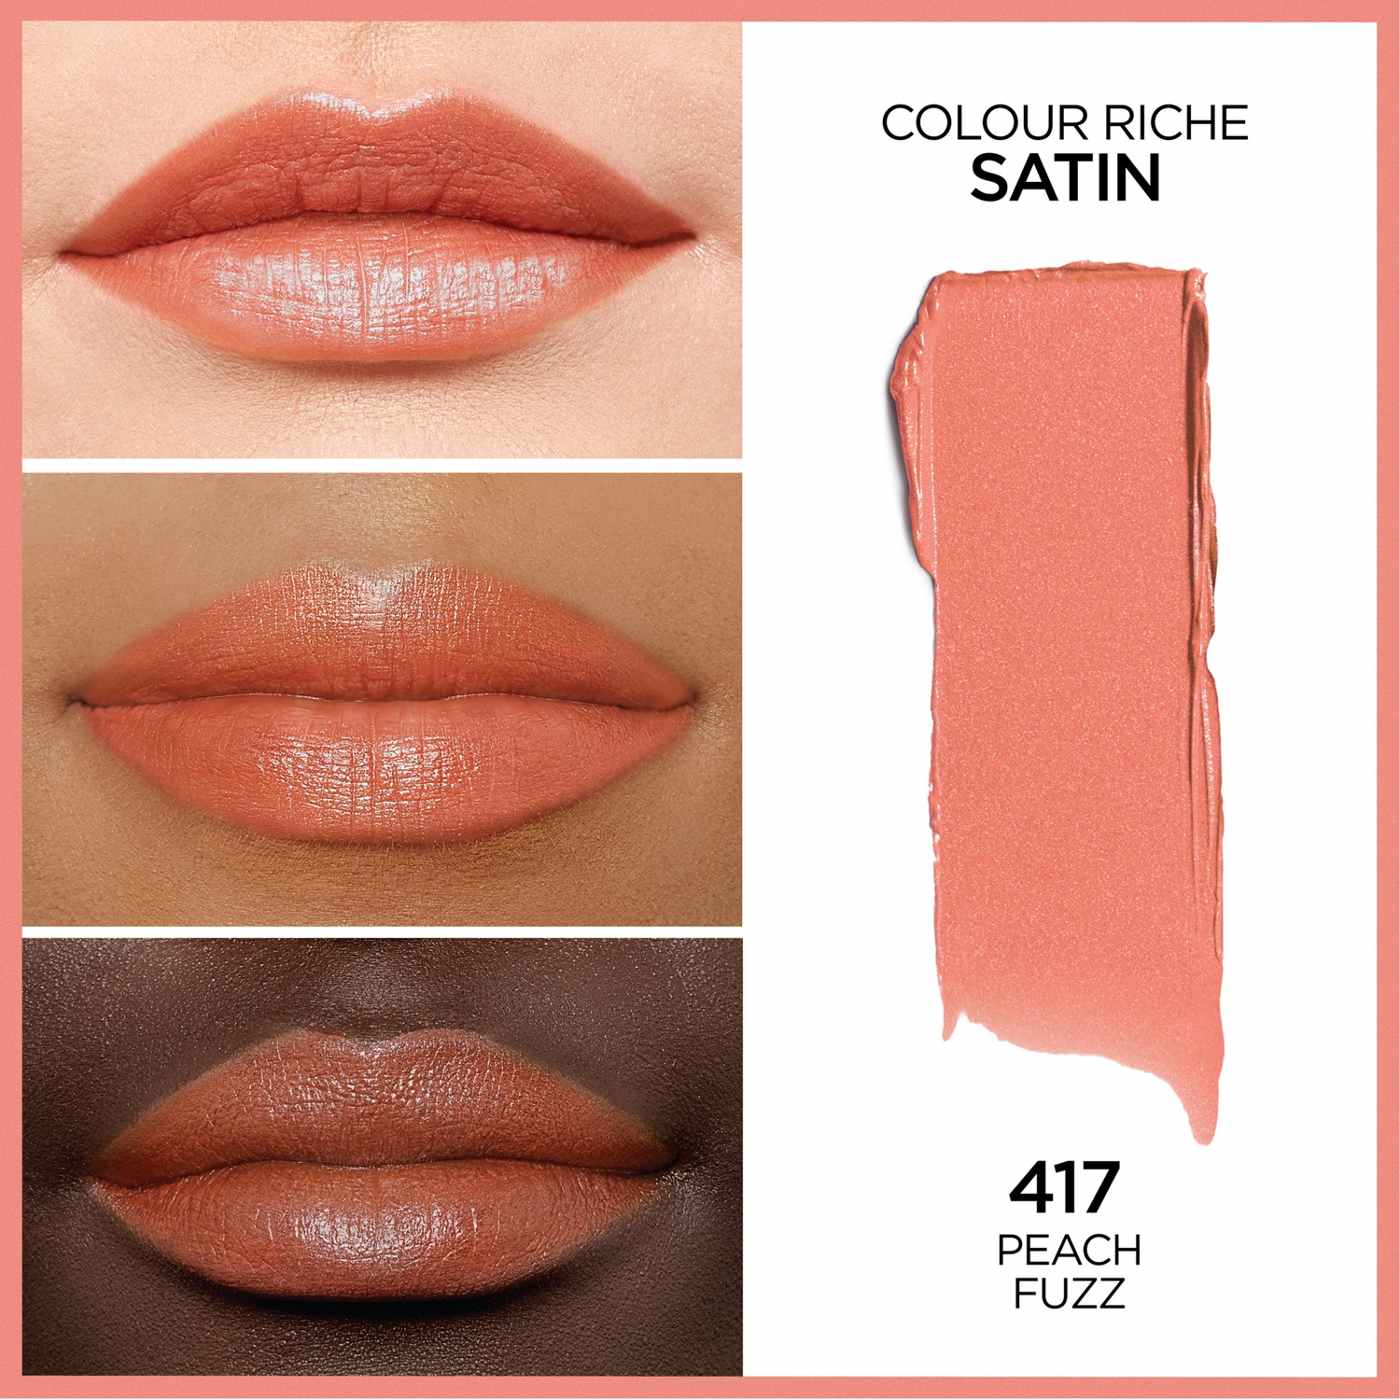 L'Oréal Paris Colour Riche Original Satin Lipstick - Peach Fuzz; image 4 of 5